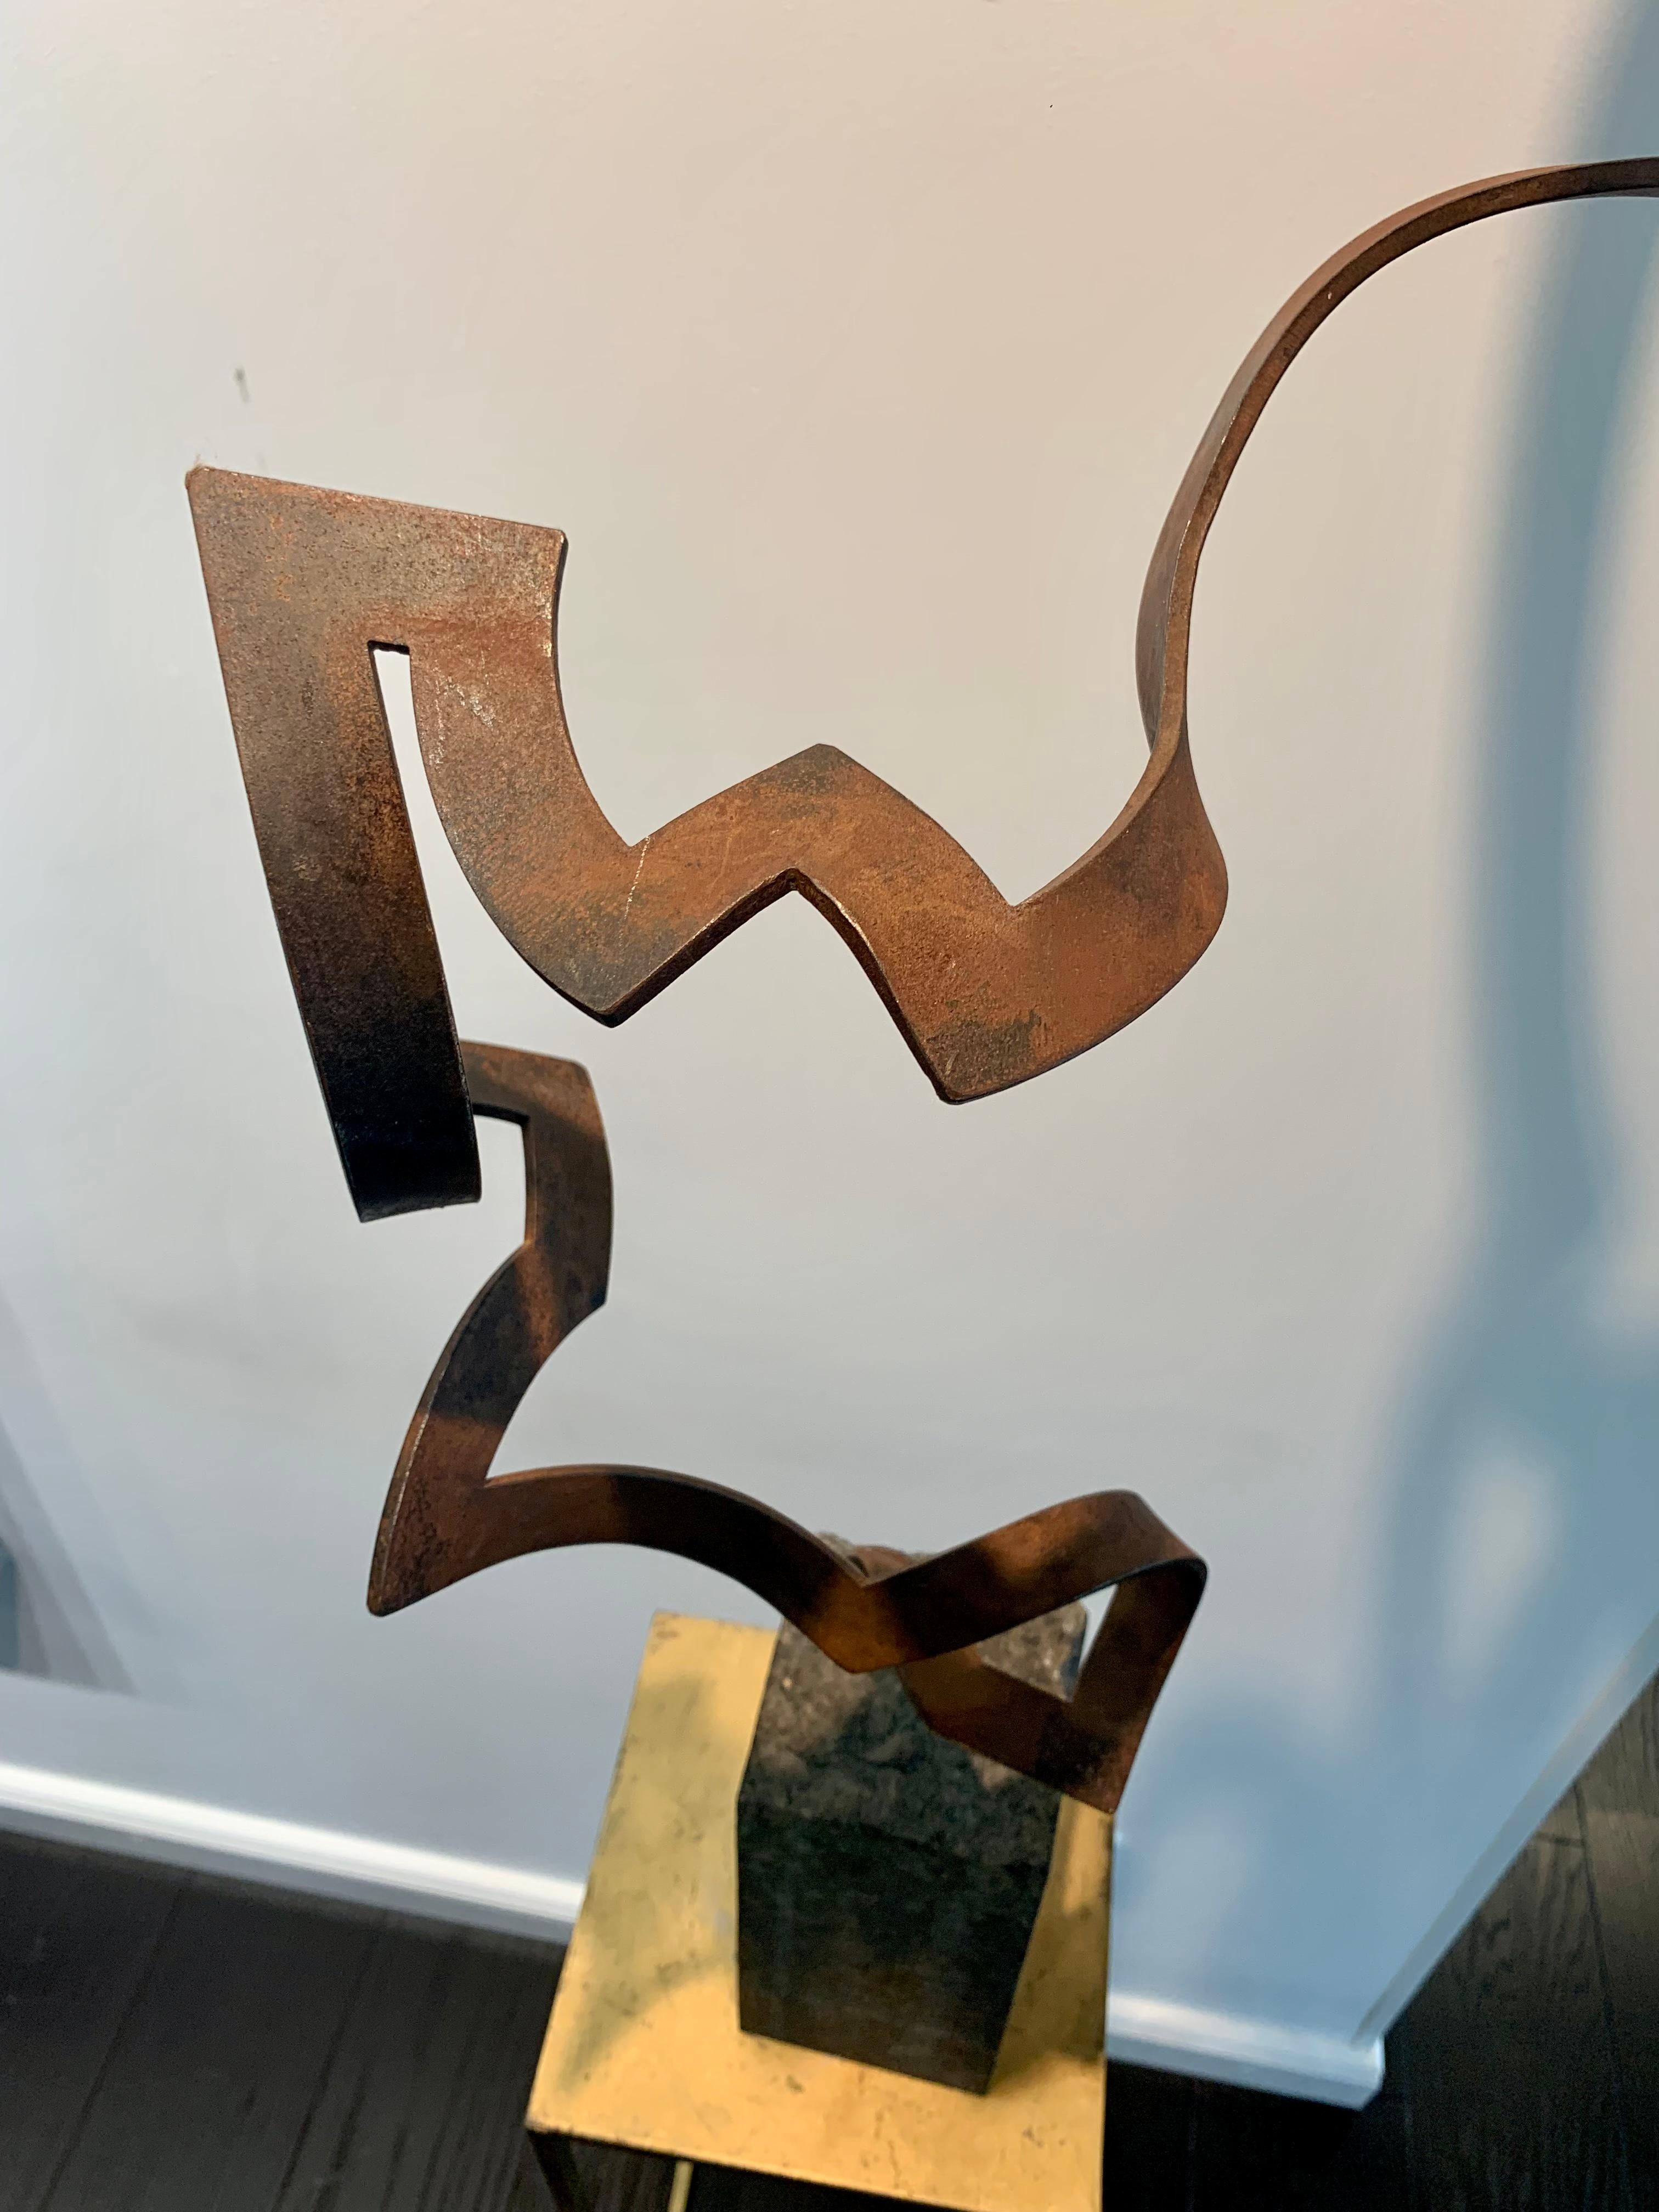 Steel Dance by Kuno Vollet Contemporary Steel Sculpture for indoor or outdoor For Sale 9